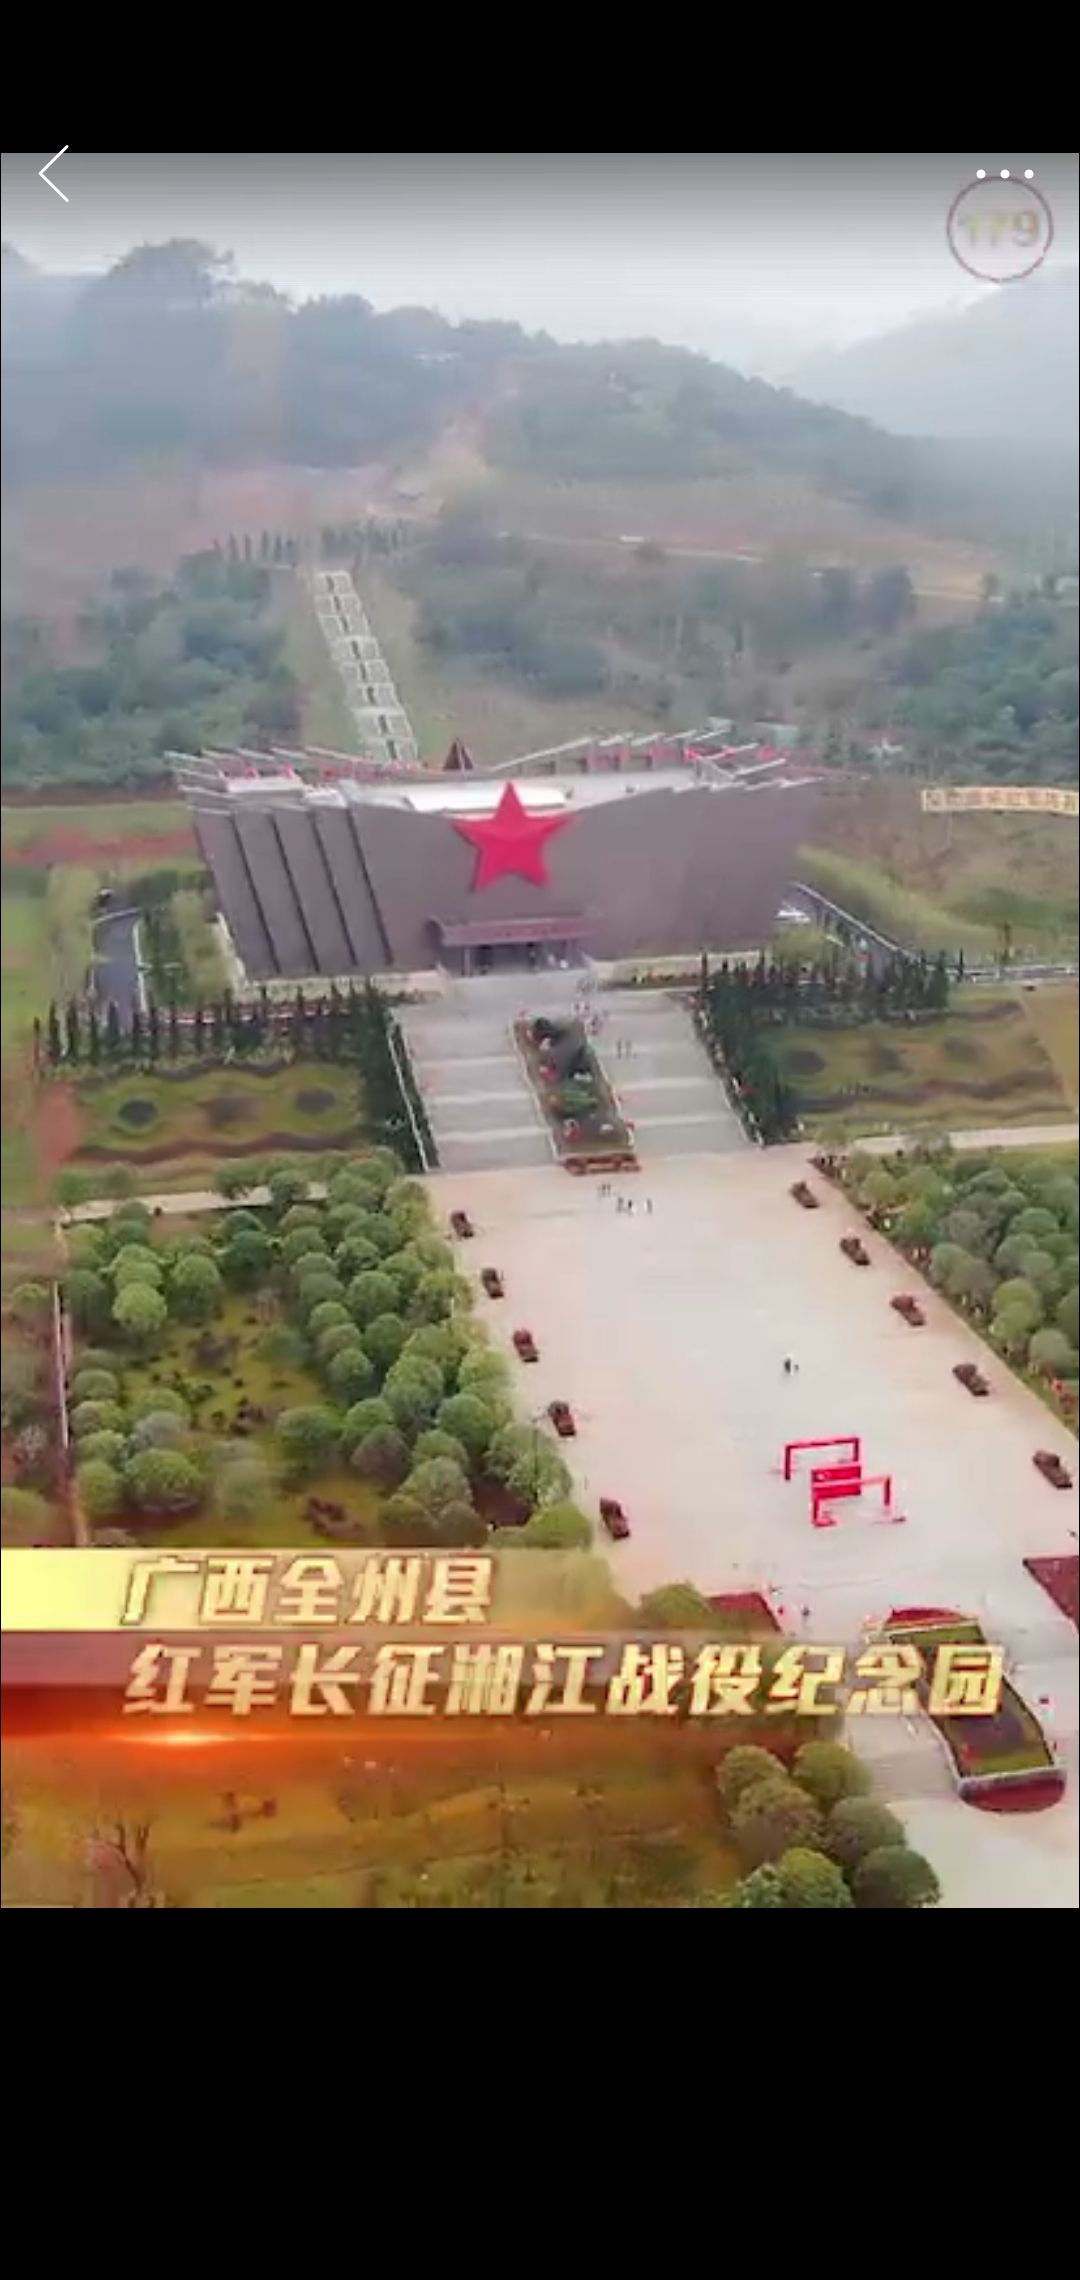 湘江纪念园位于全州县才湾镇境内的湘江三大阻击战之